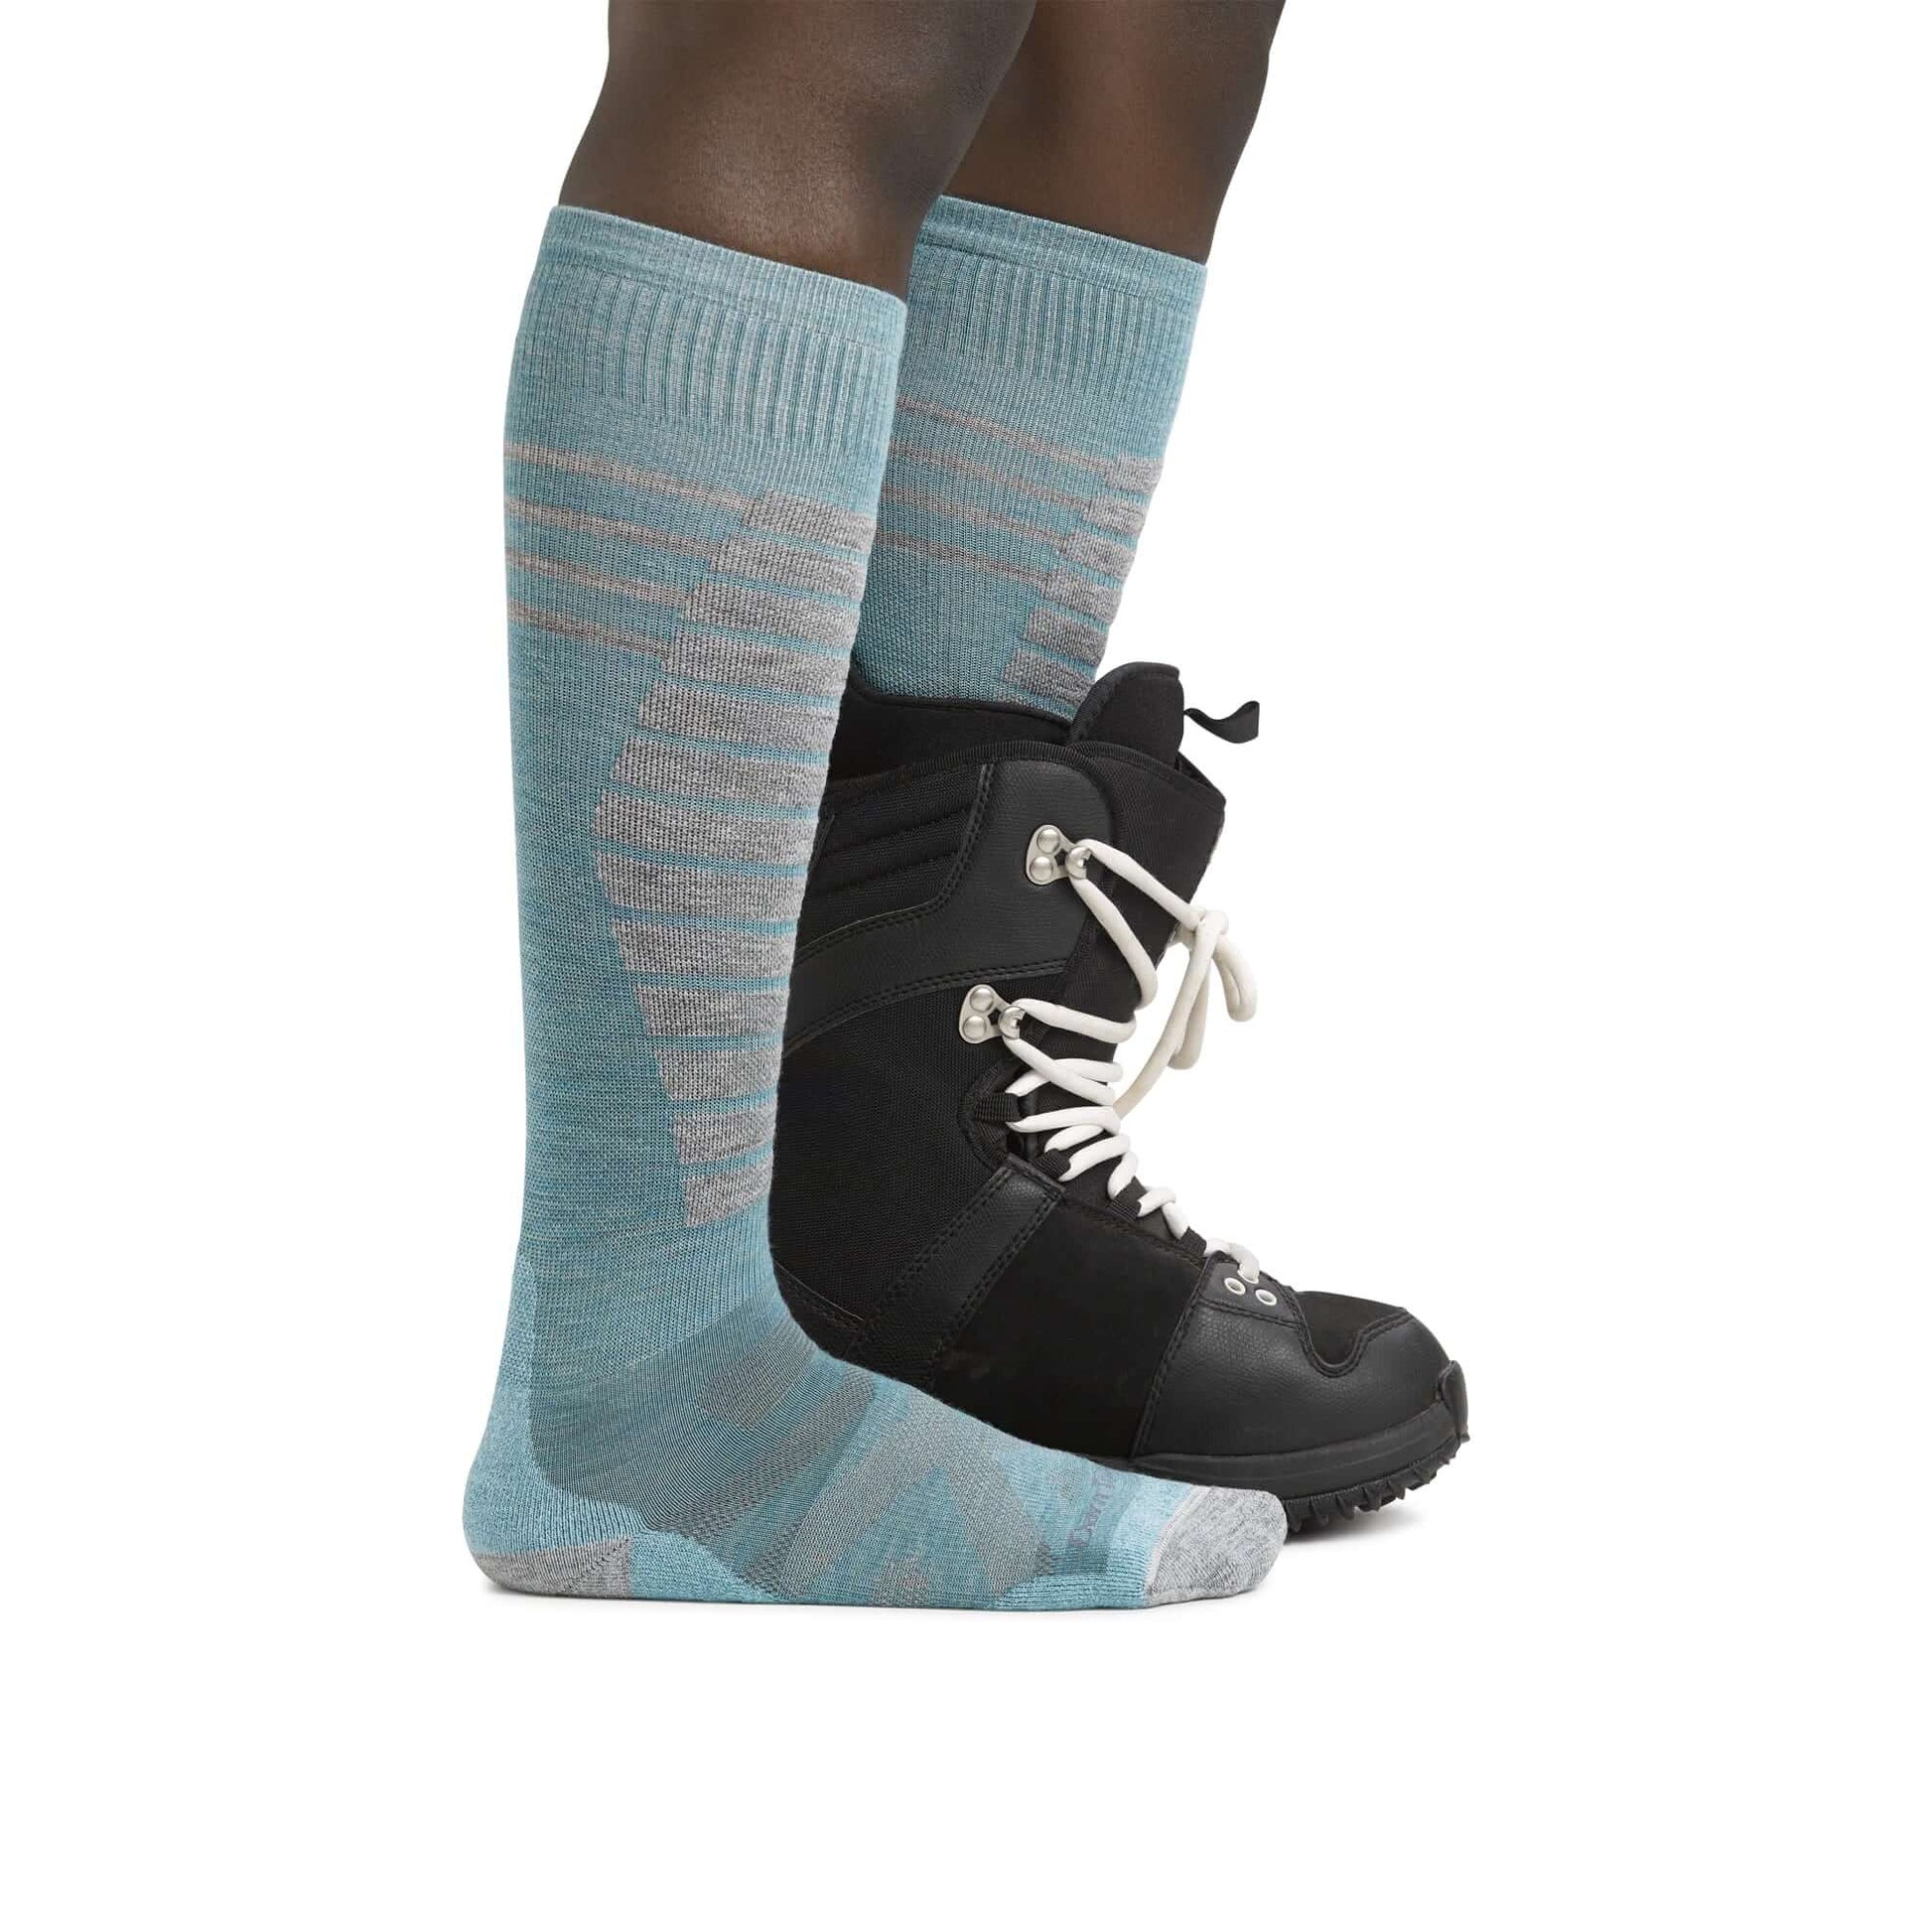 Darn Tough Calcetines de esquí/snow con acolchado. Mod. Edge 8013 color Color: Aqua